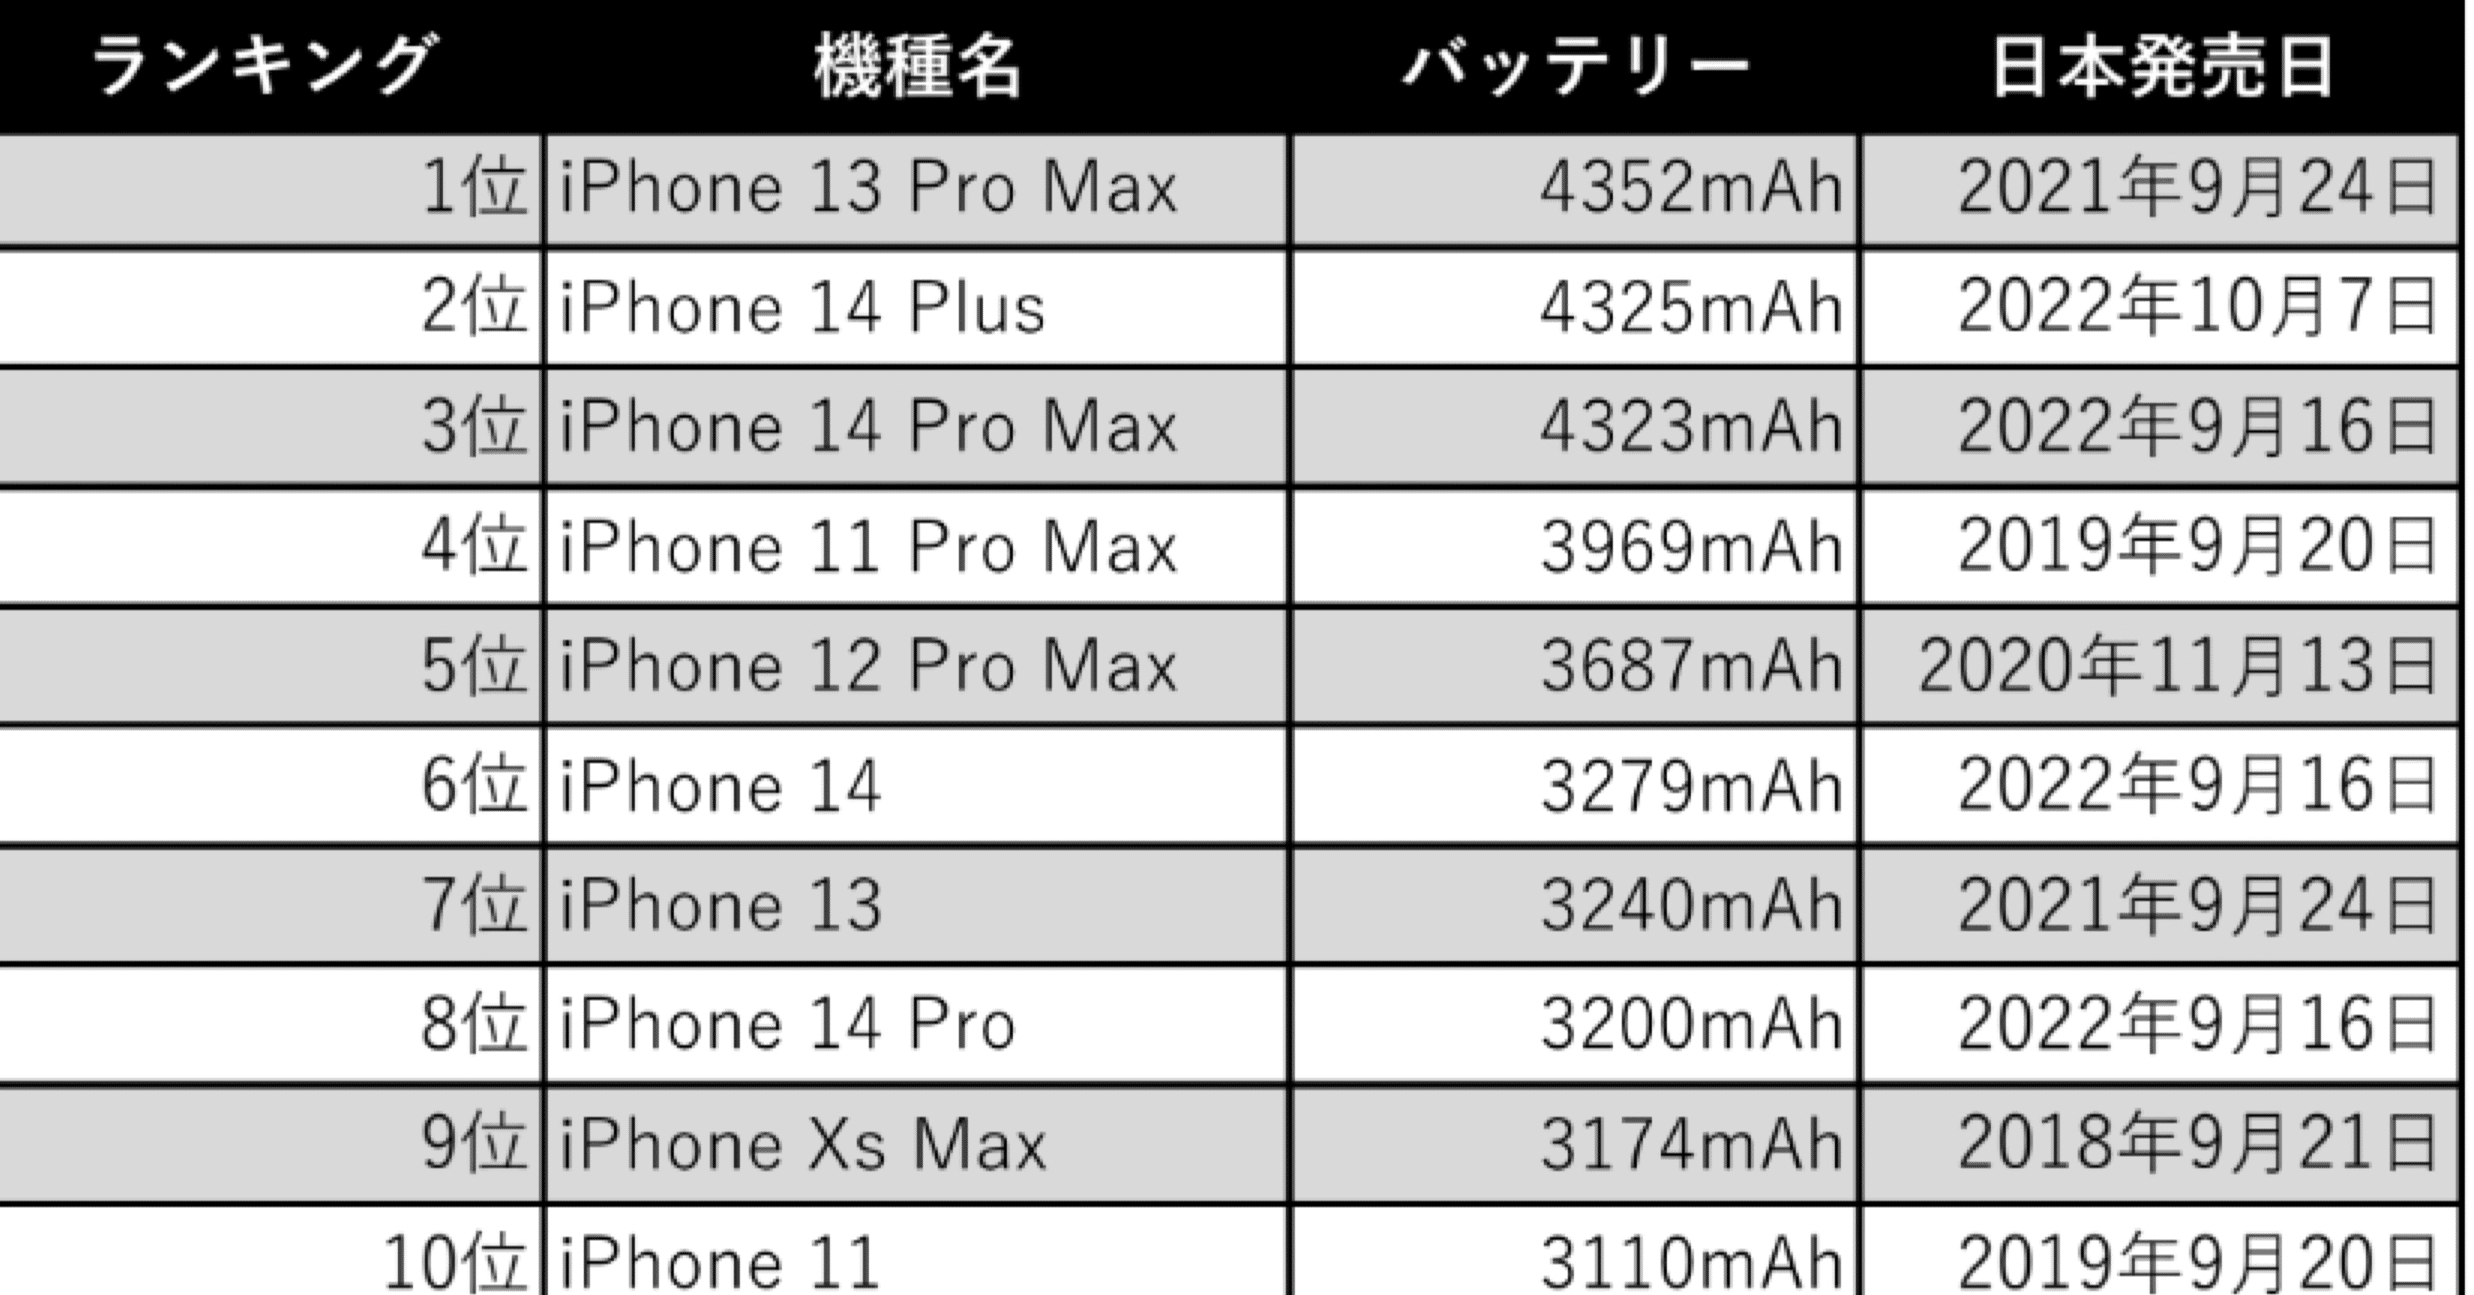 歴代iPhone バッテリー容量ランキング一覧表 [Simple Table]｜たくみ